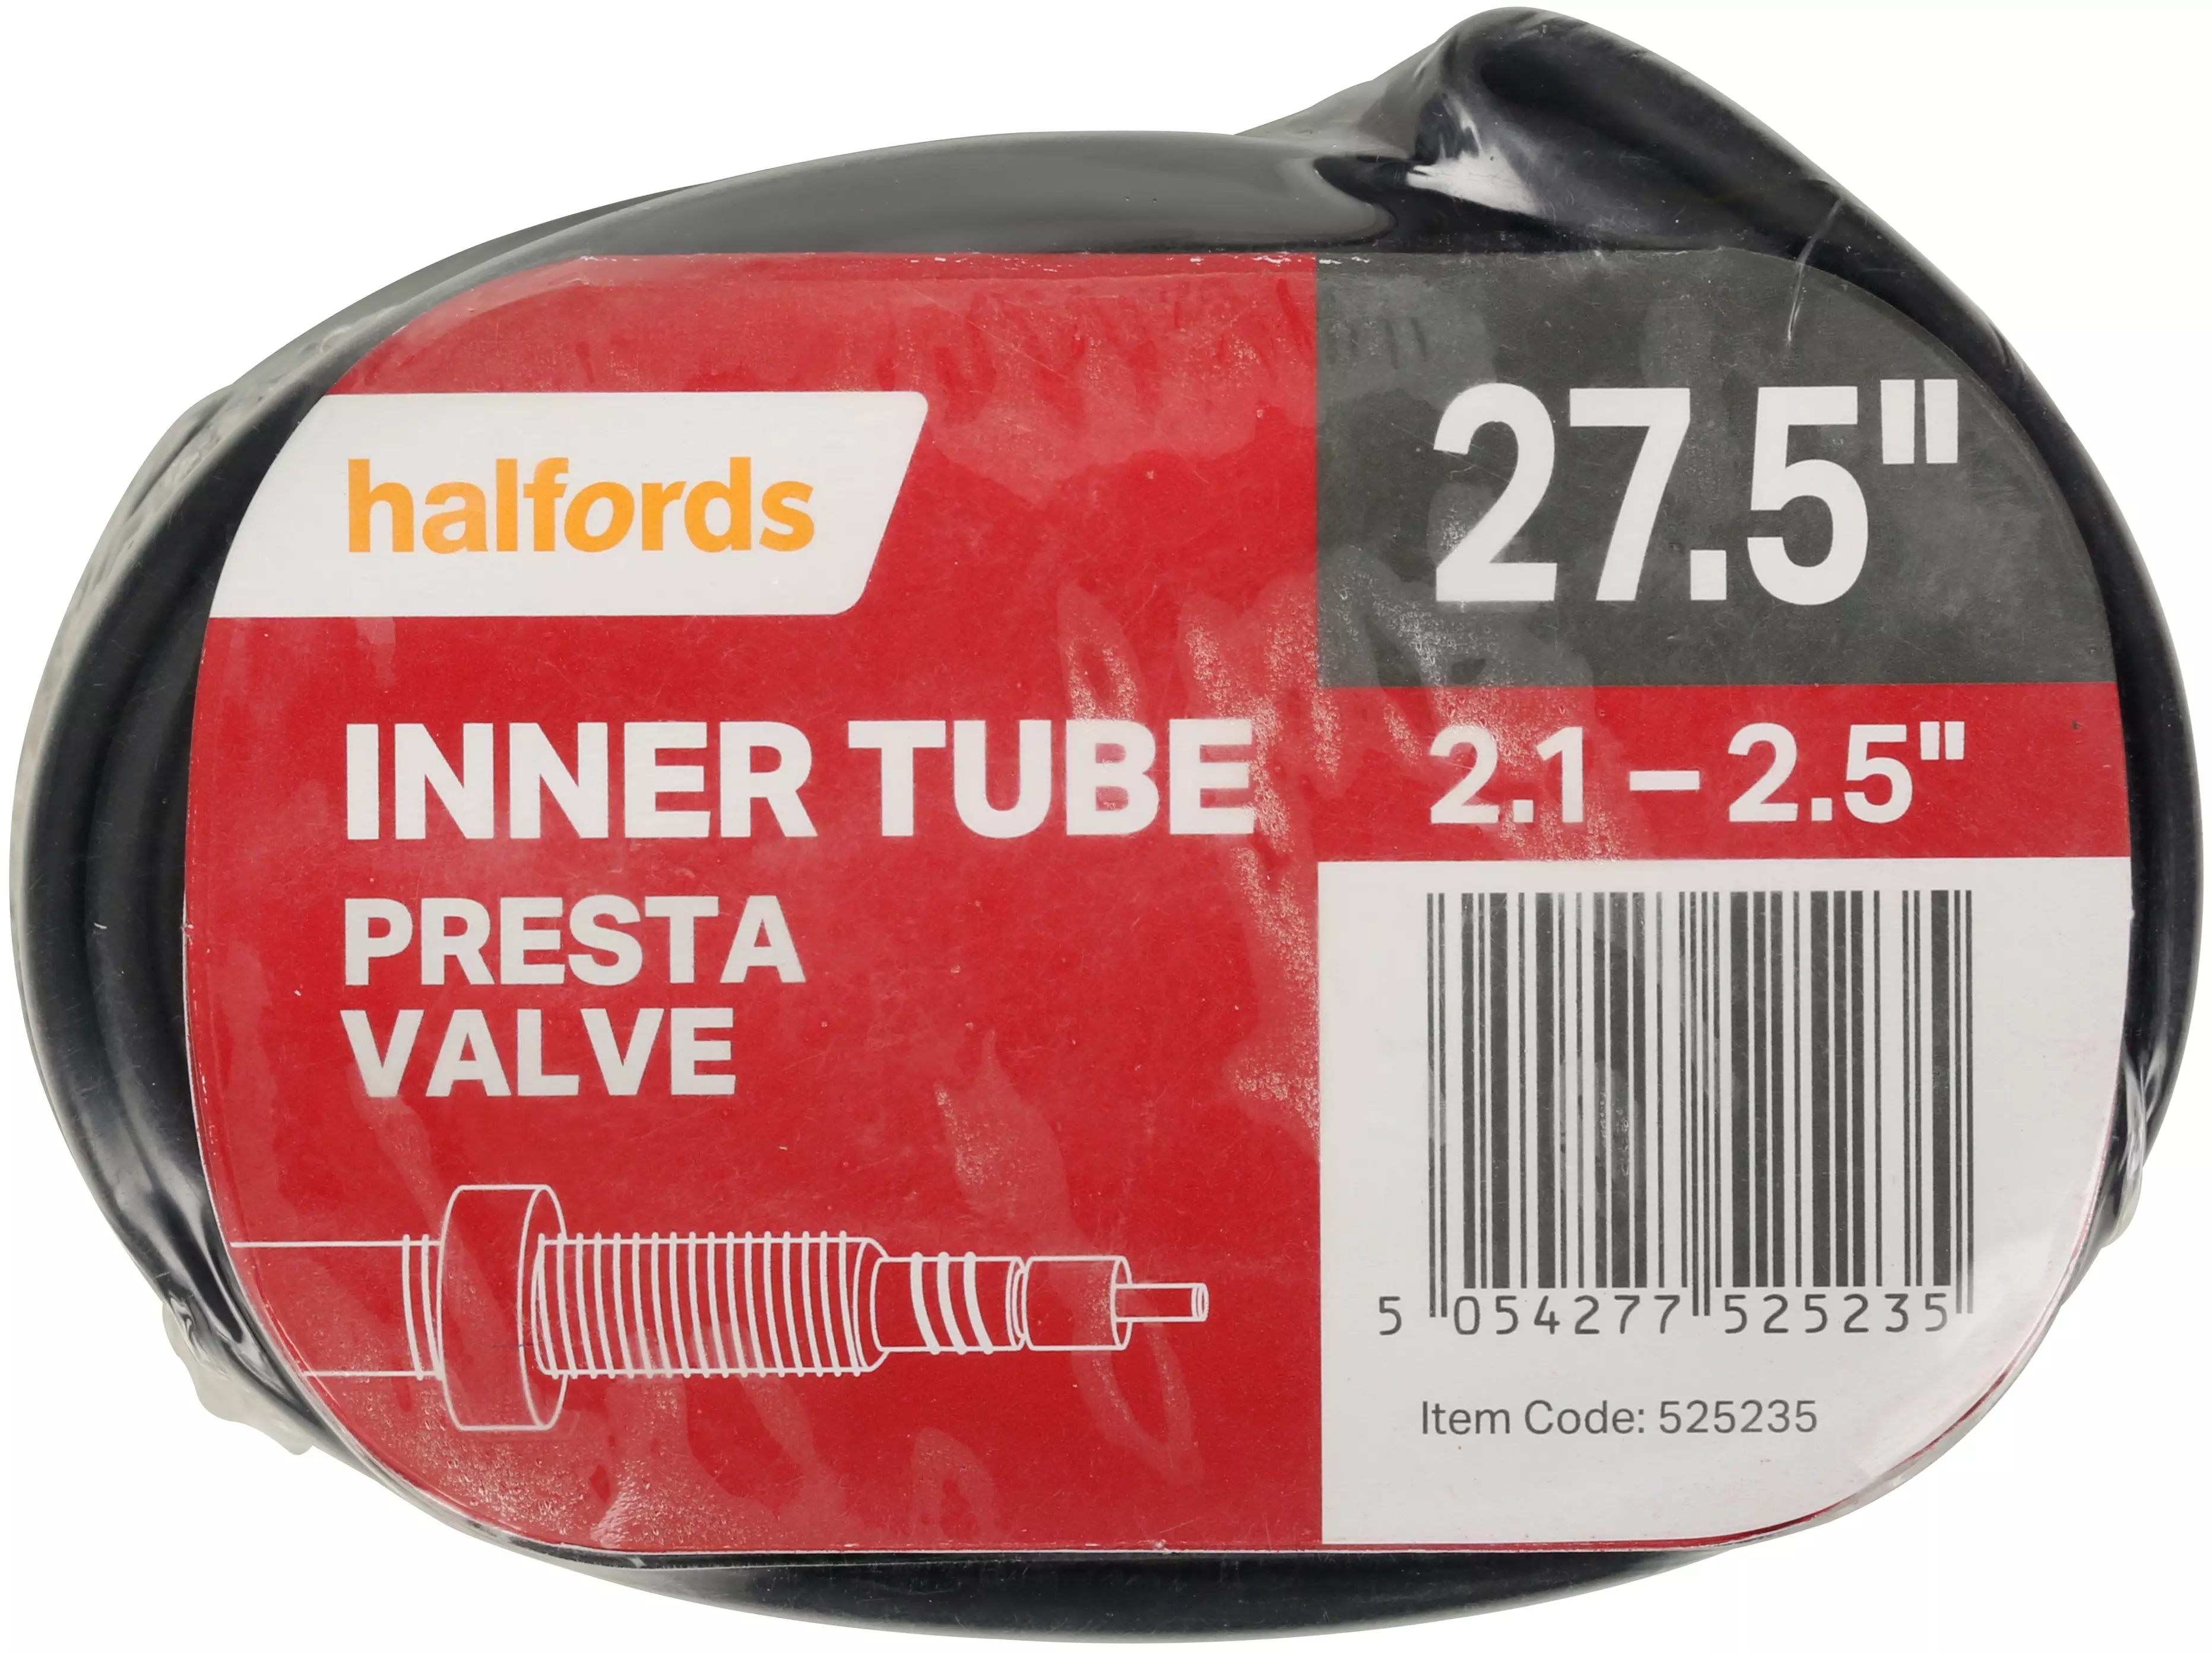 halfords presta valve